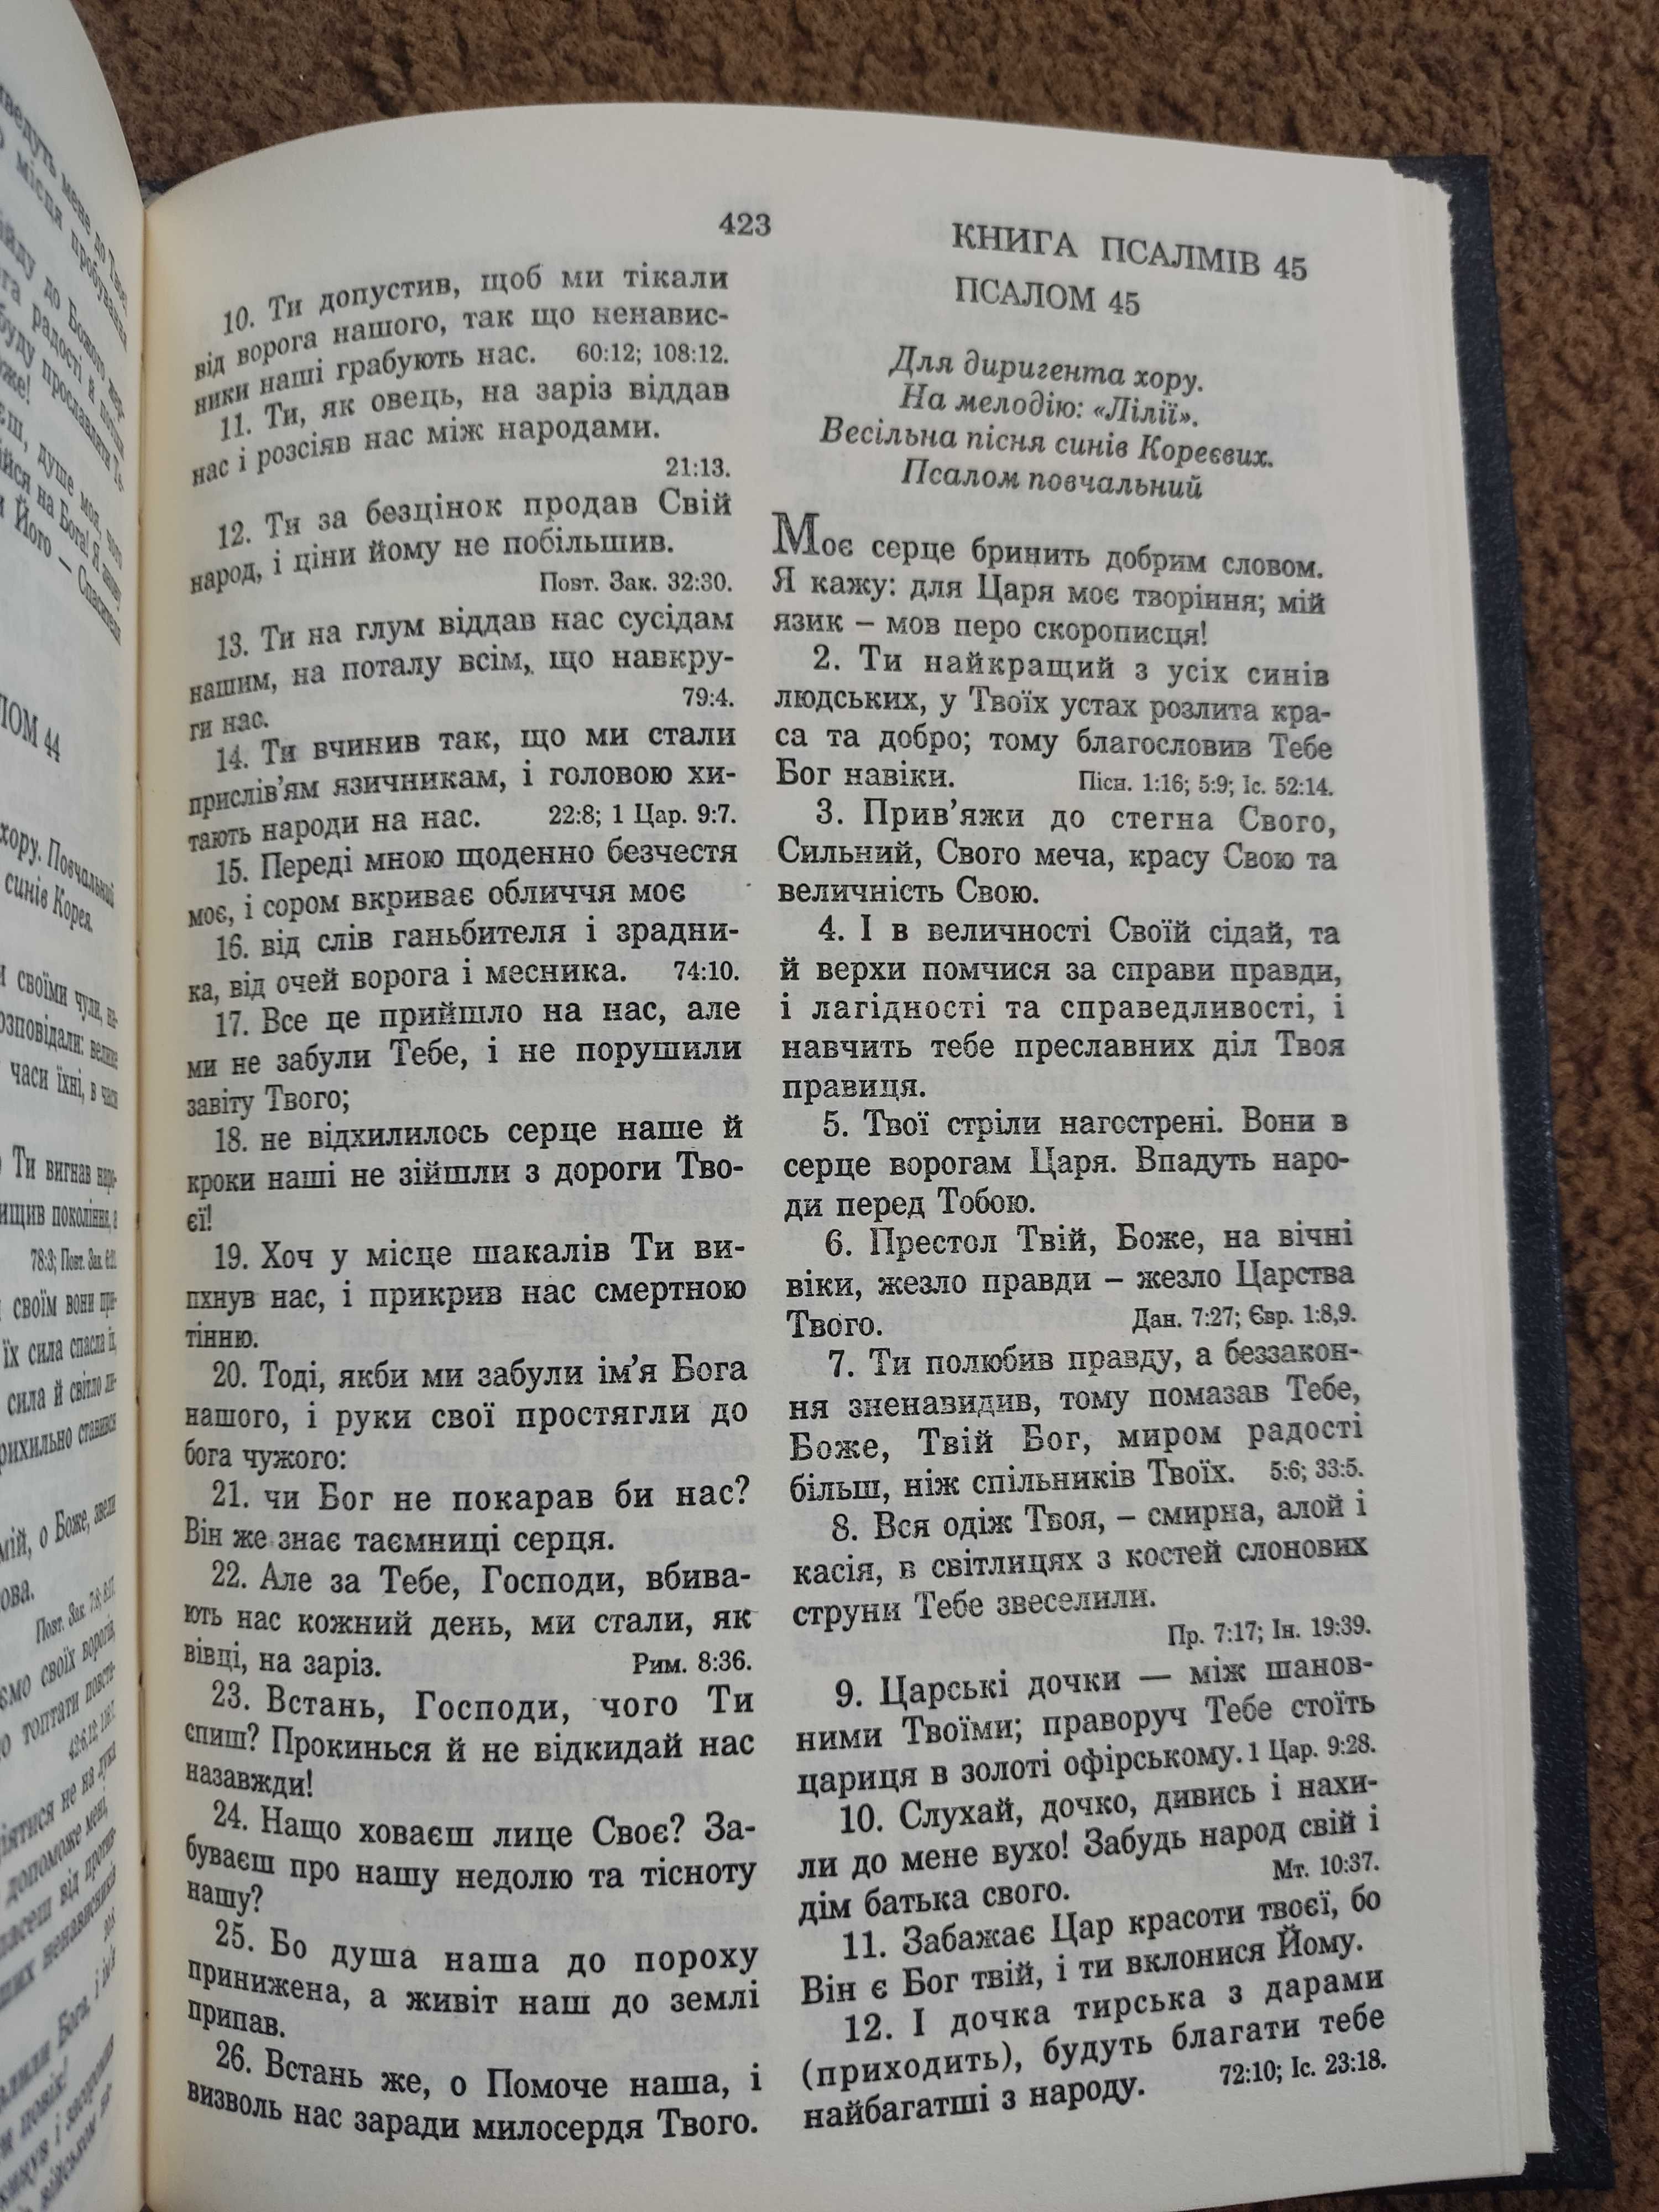 Біблія - Новий завіт і Псалтир